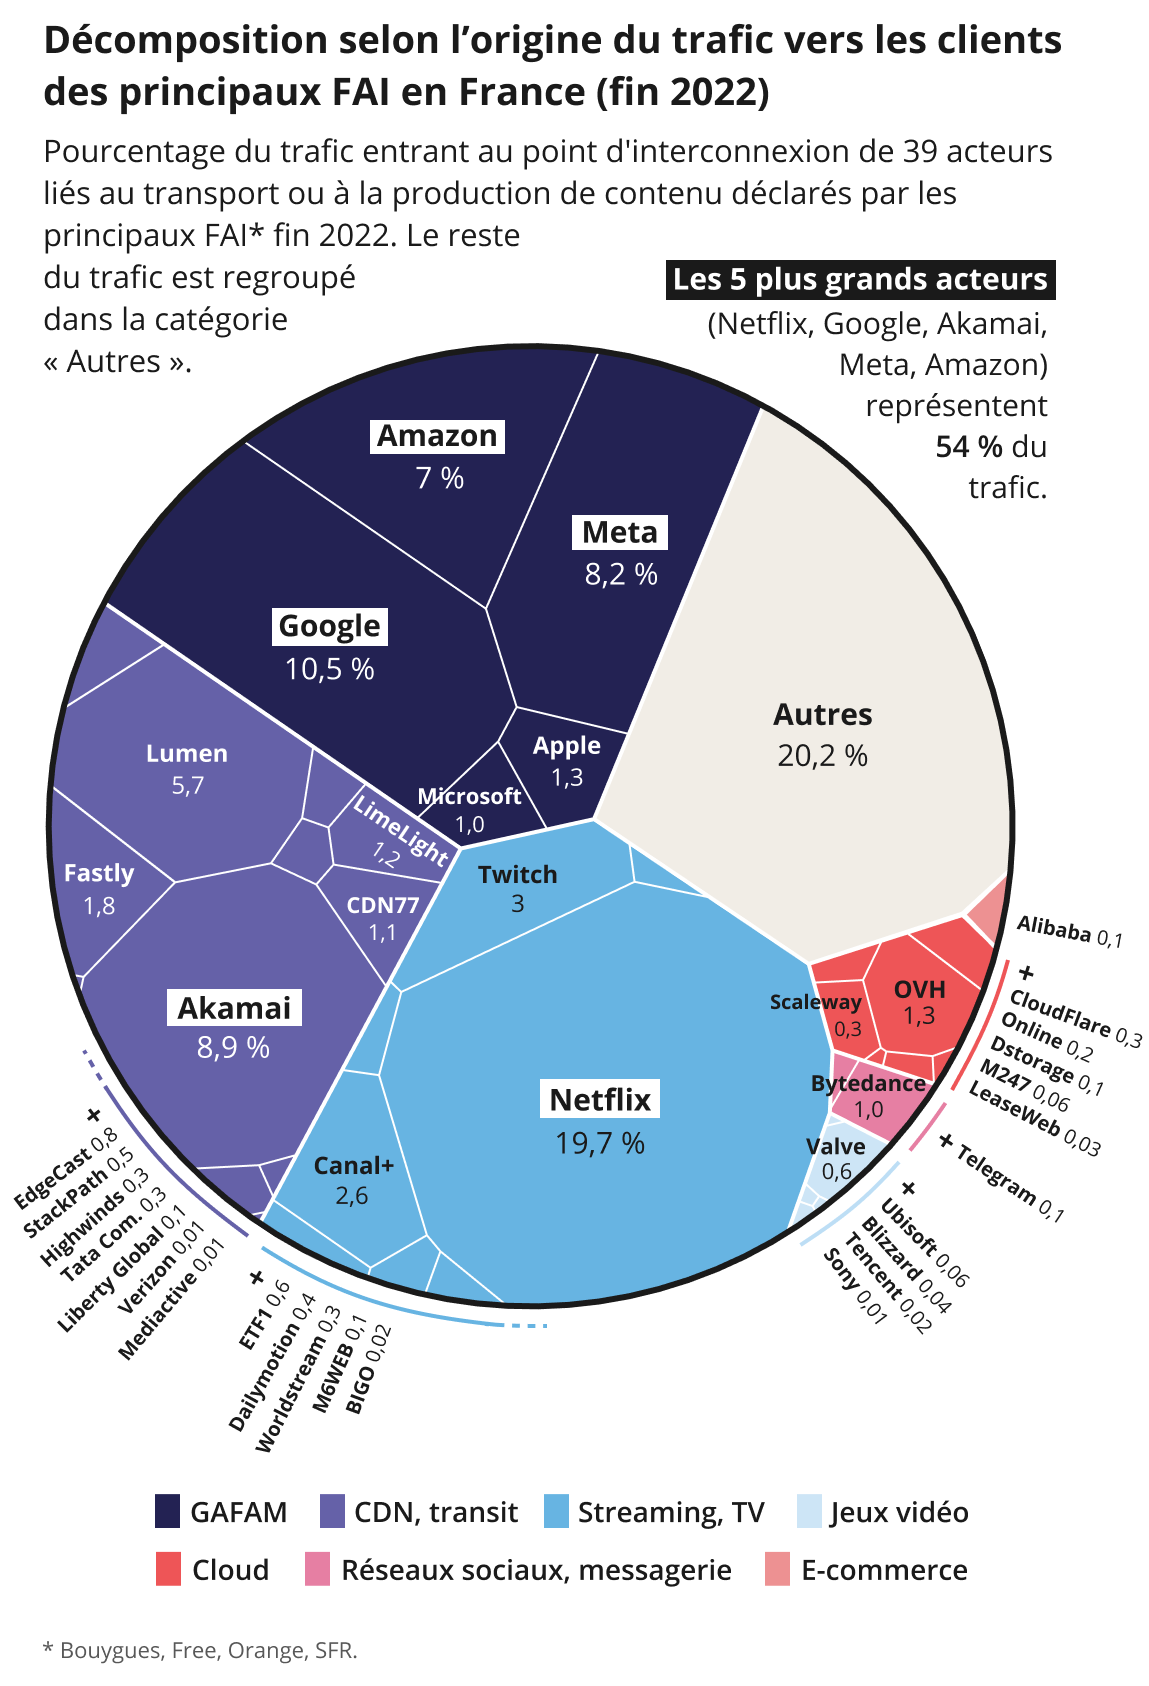 Infographie : décomposition selon l'origine du trafic vers les clients des principaux FAI en France (fin 2022)